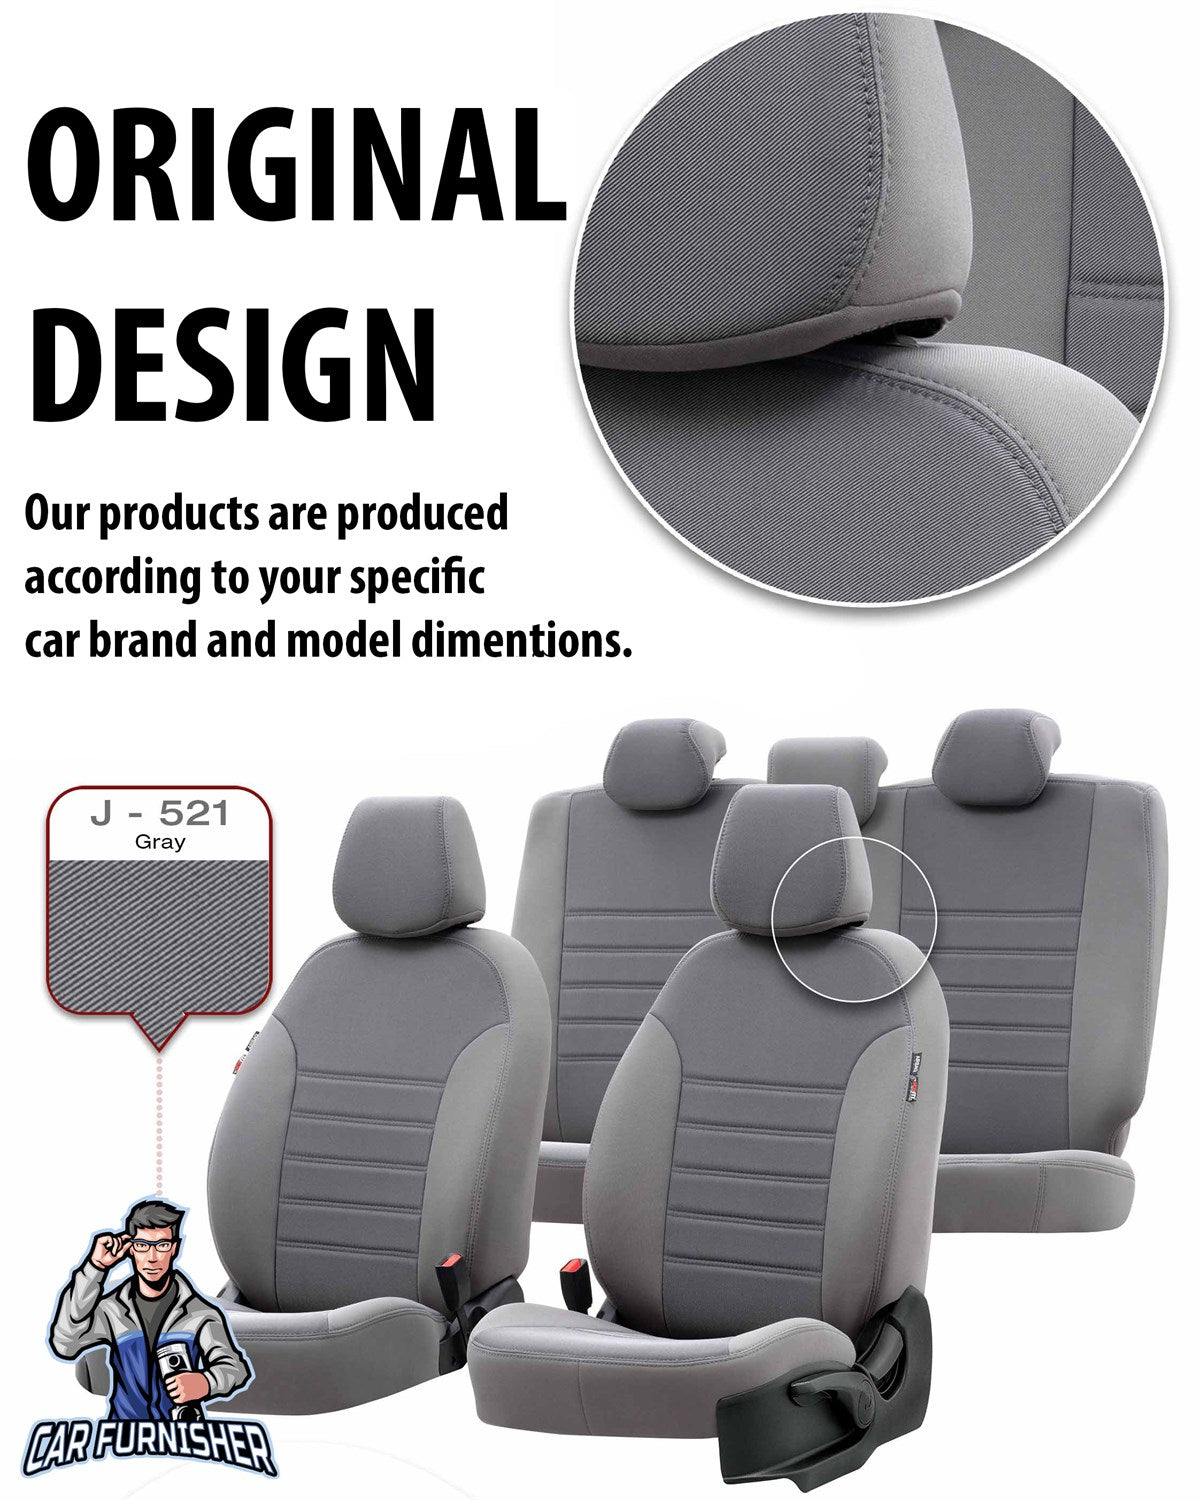 Isuzu Nlr Seat Covers Original Jacquard Design Smoked Jacquard Fabric